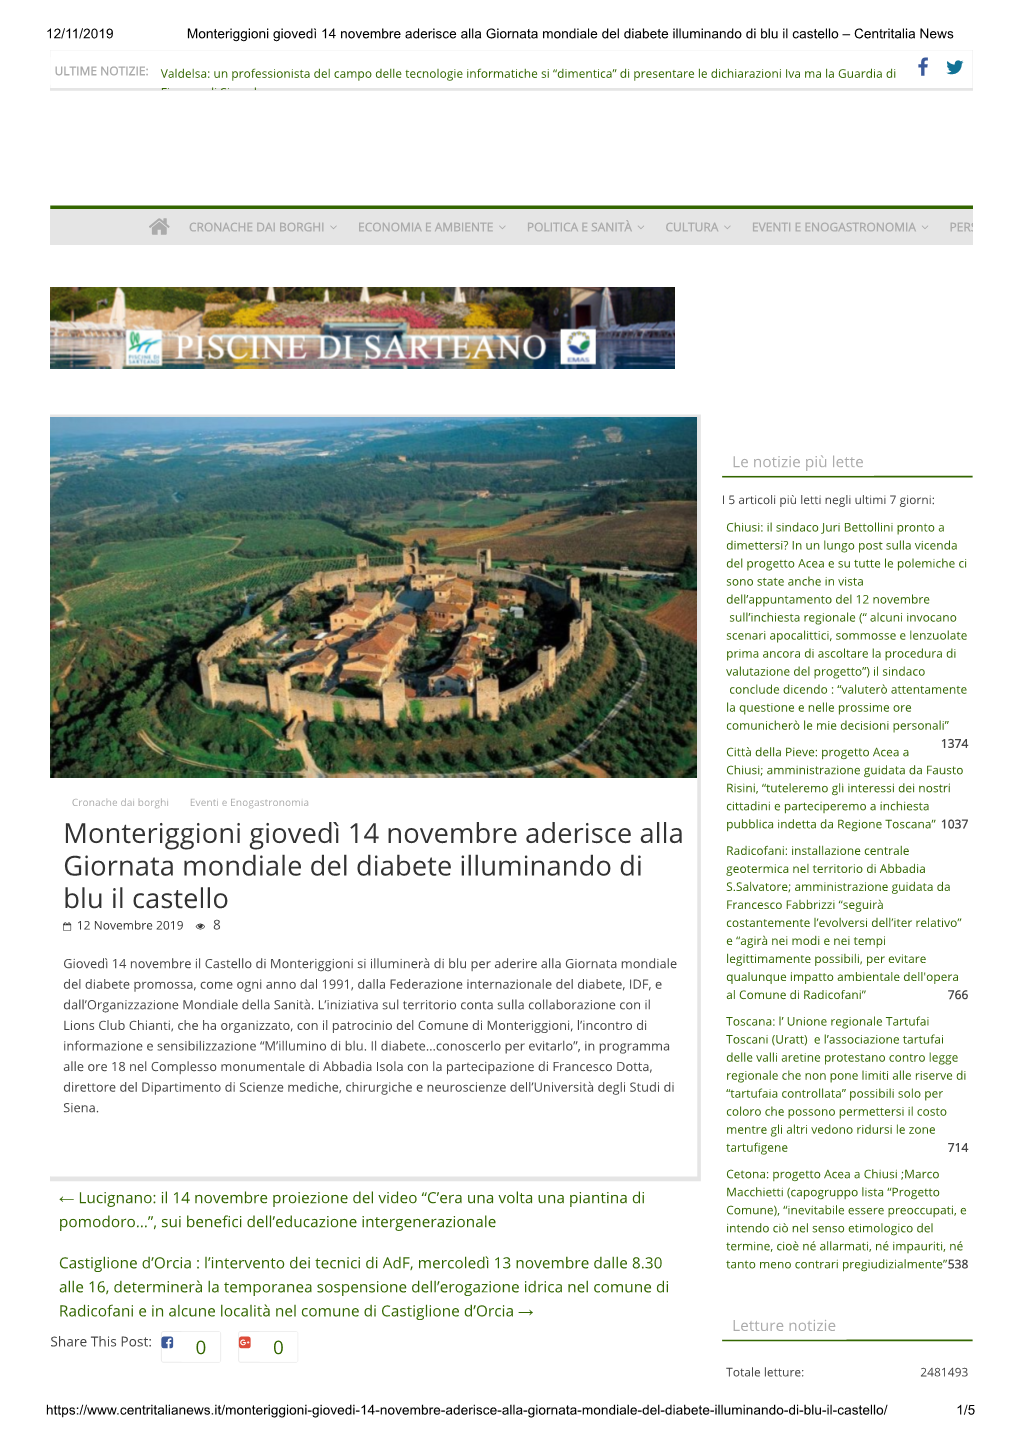 Monteriggioni Giovedì 14 Novembre Aderisce Alla Giornata Mondiale Del Diabete Illuminando Di Blu Il Castello – Centritalia News